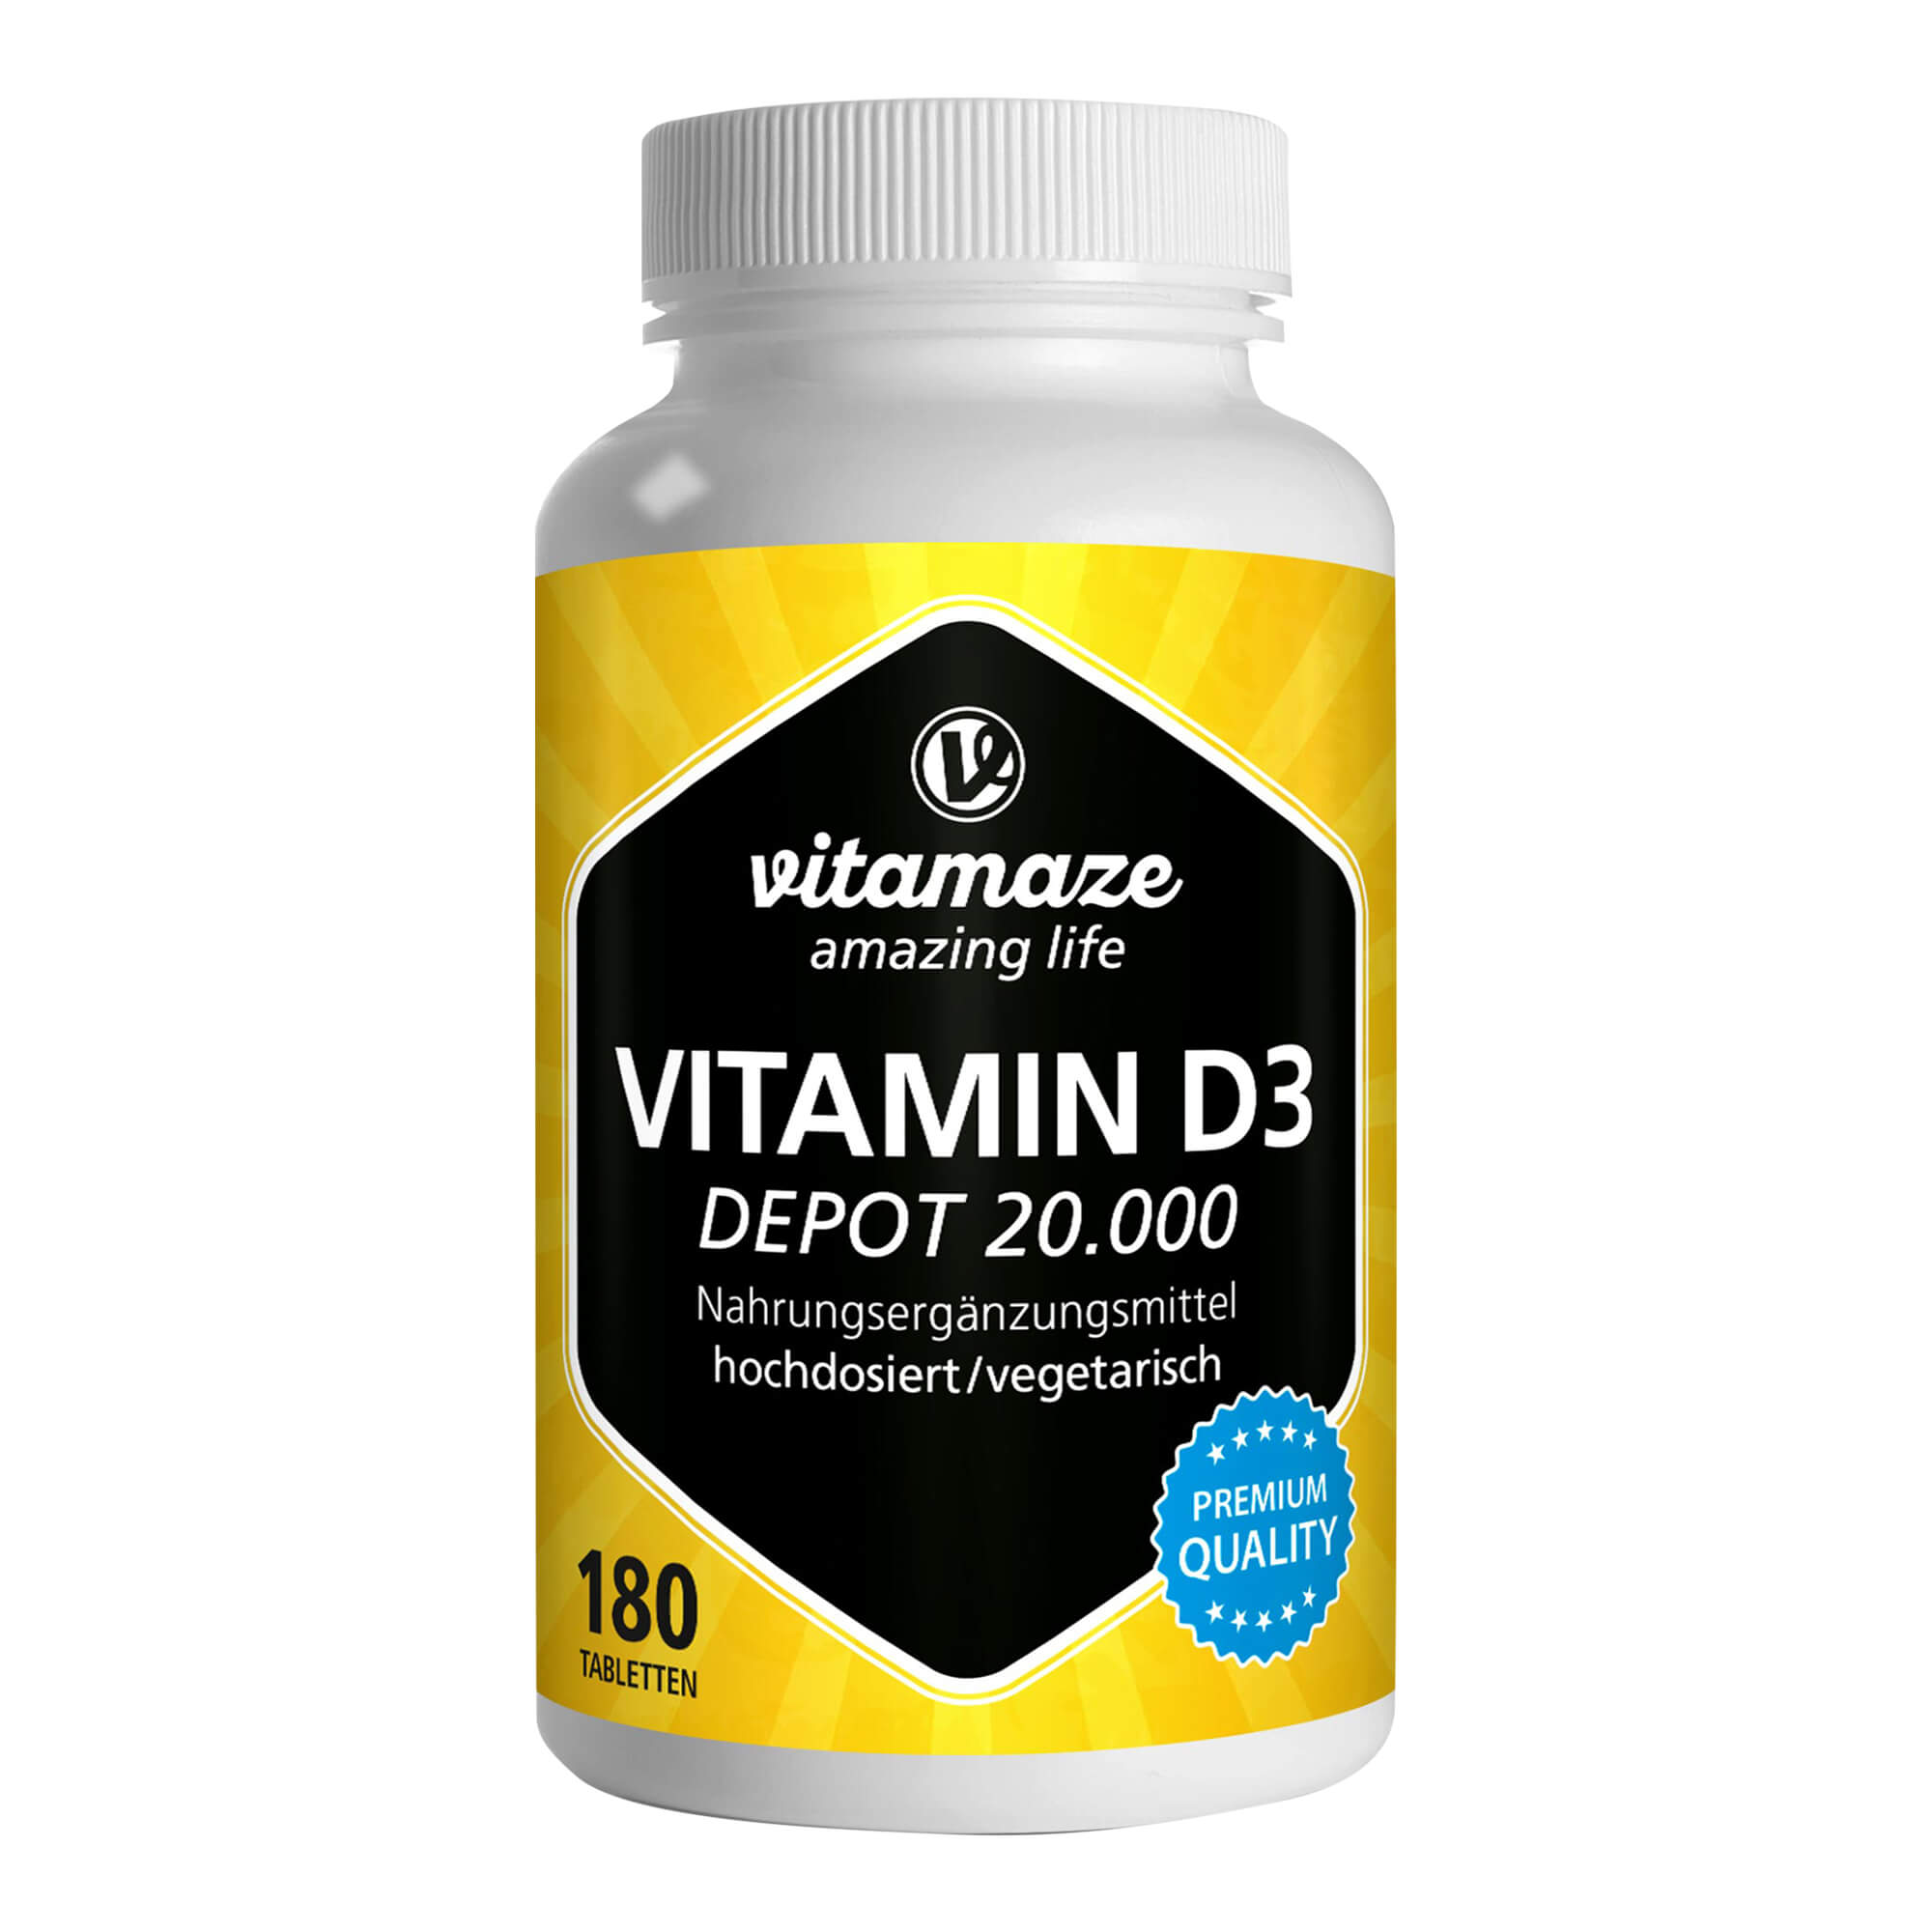 Nahrungsergänzungsmittel mit Vitamine D3. Für Knochen, Zähne, Muskeln und Immunsystem. Großpackung für bis zu fünf Erwachsene.